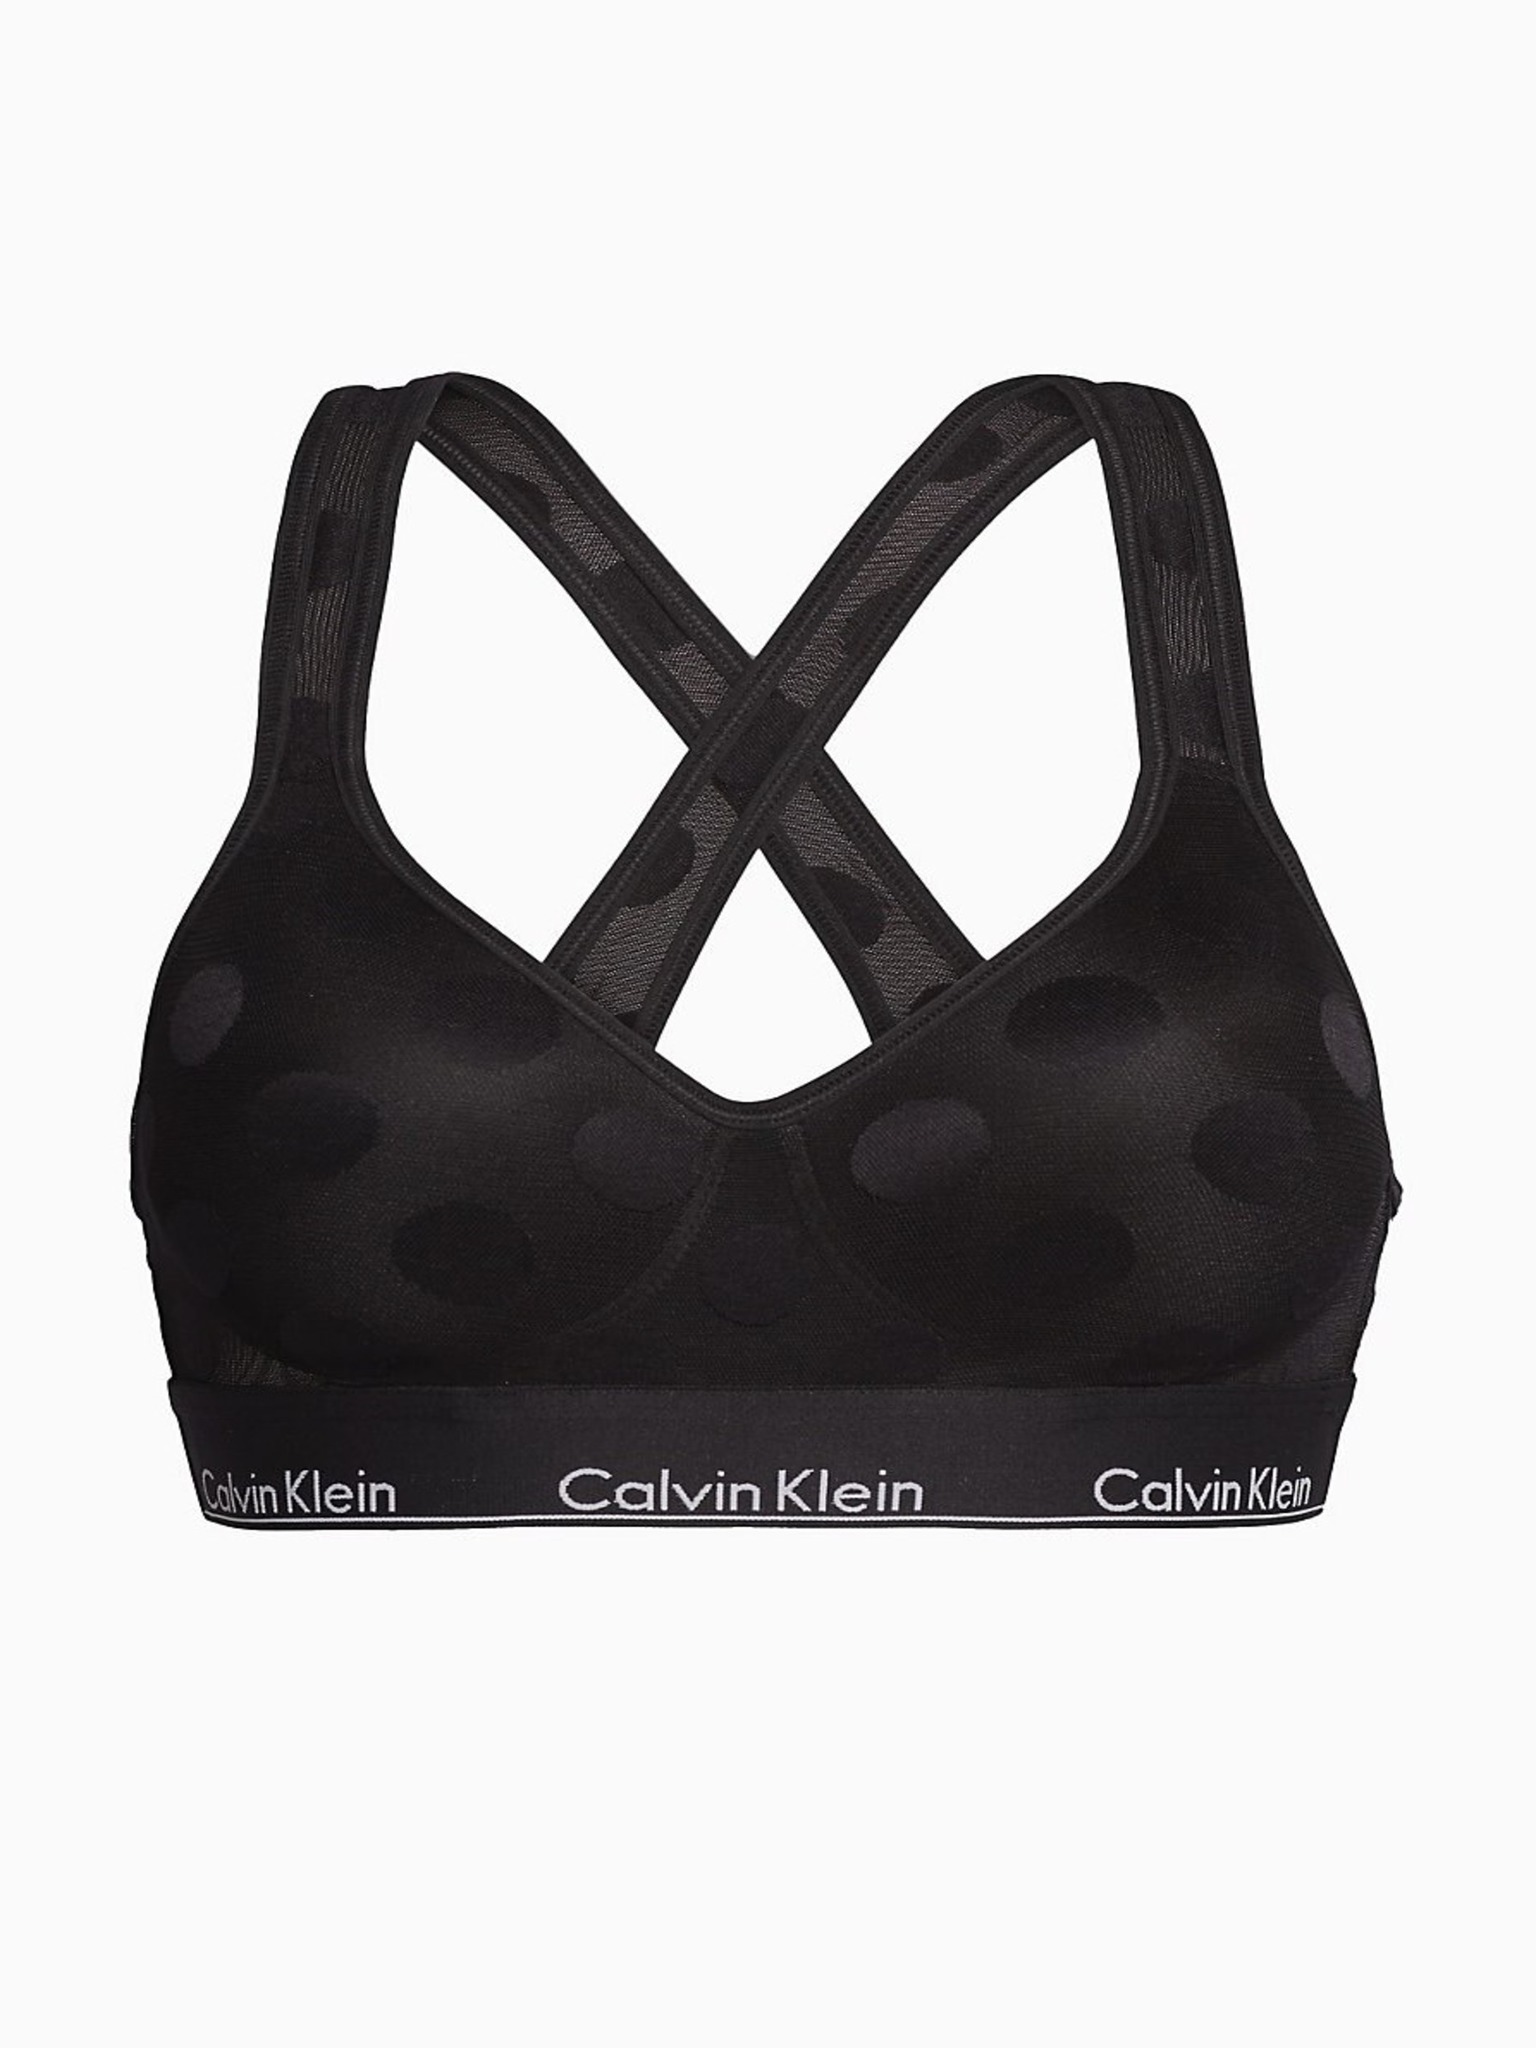 Calvin Klein Underwear - Lightly Lined Bralette Bra